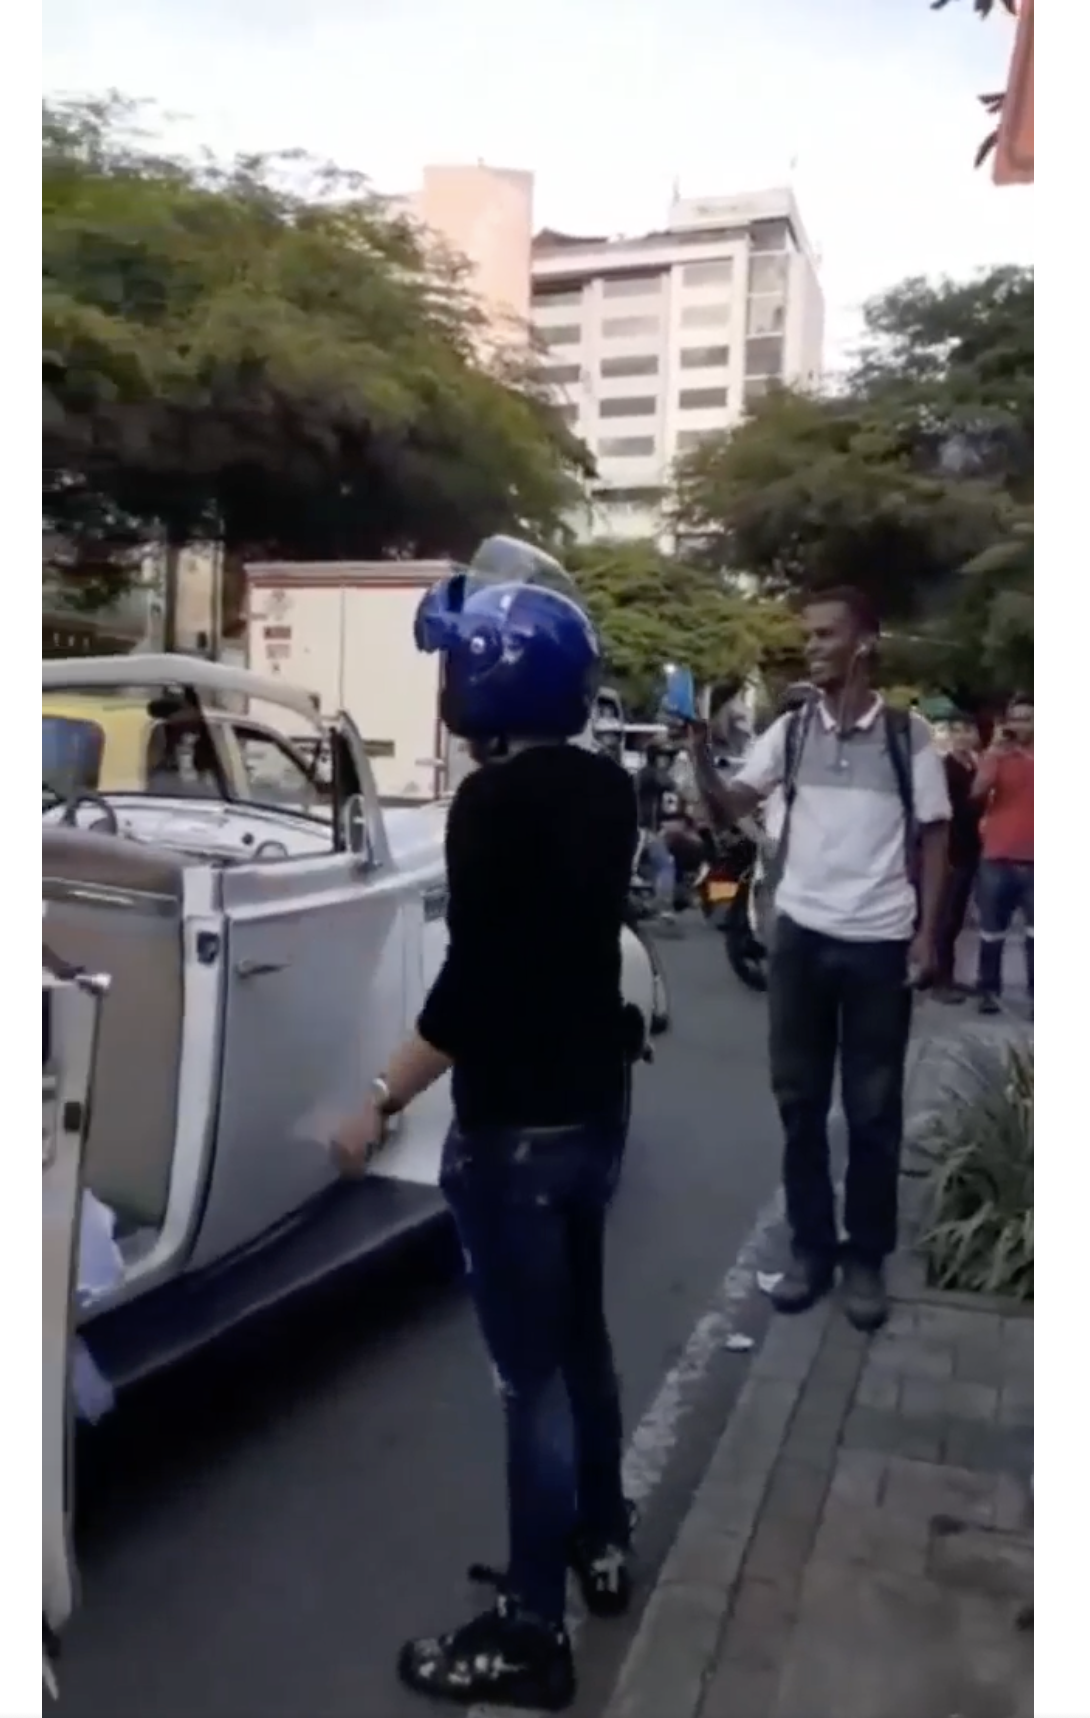 Der Motorradfahrer und ein Schaulustiger, der den Vorfall mit der Kamera aufnahm, sind am Straßenrand in Medellin, Kolumbien, zu sehen | Quelle: facebook.com/maspopulareventos